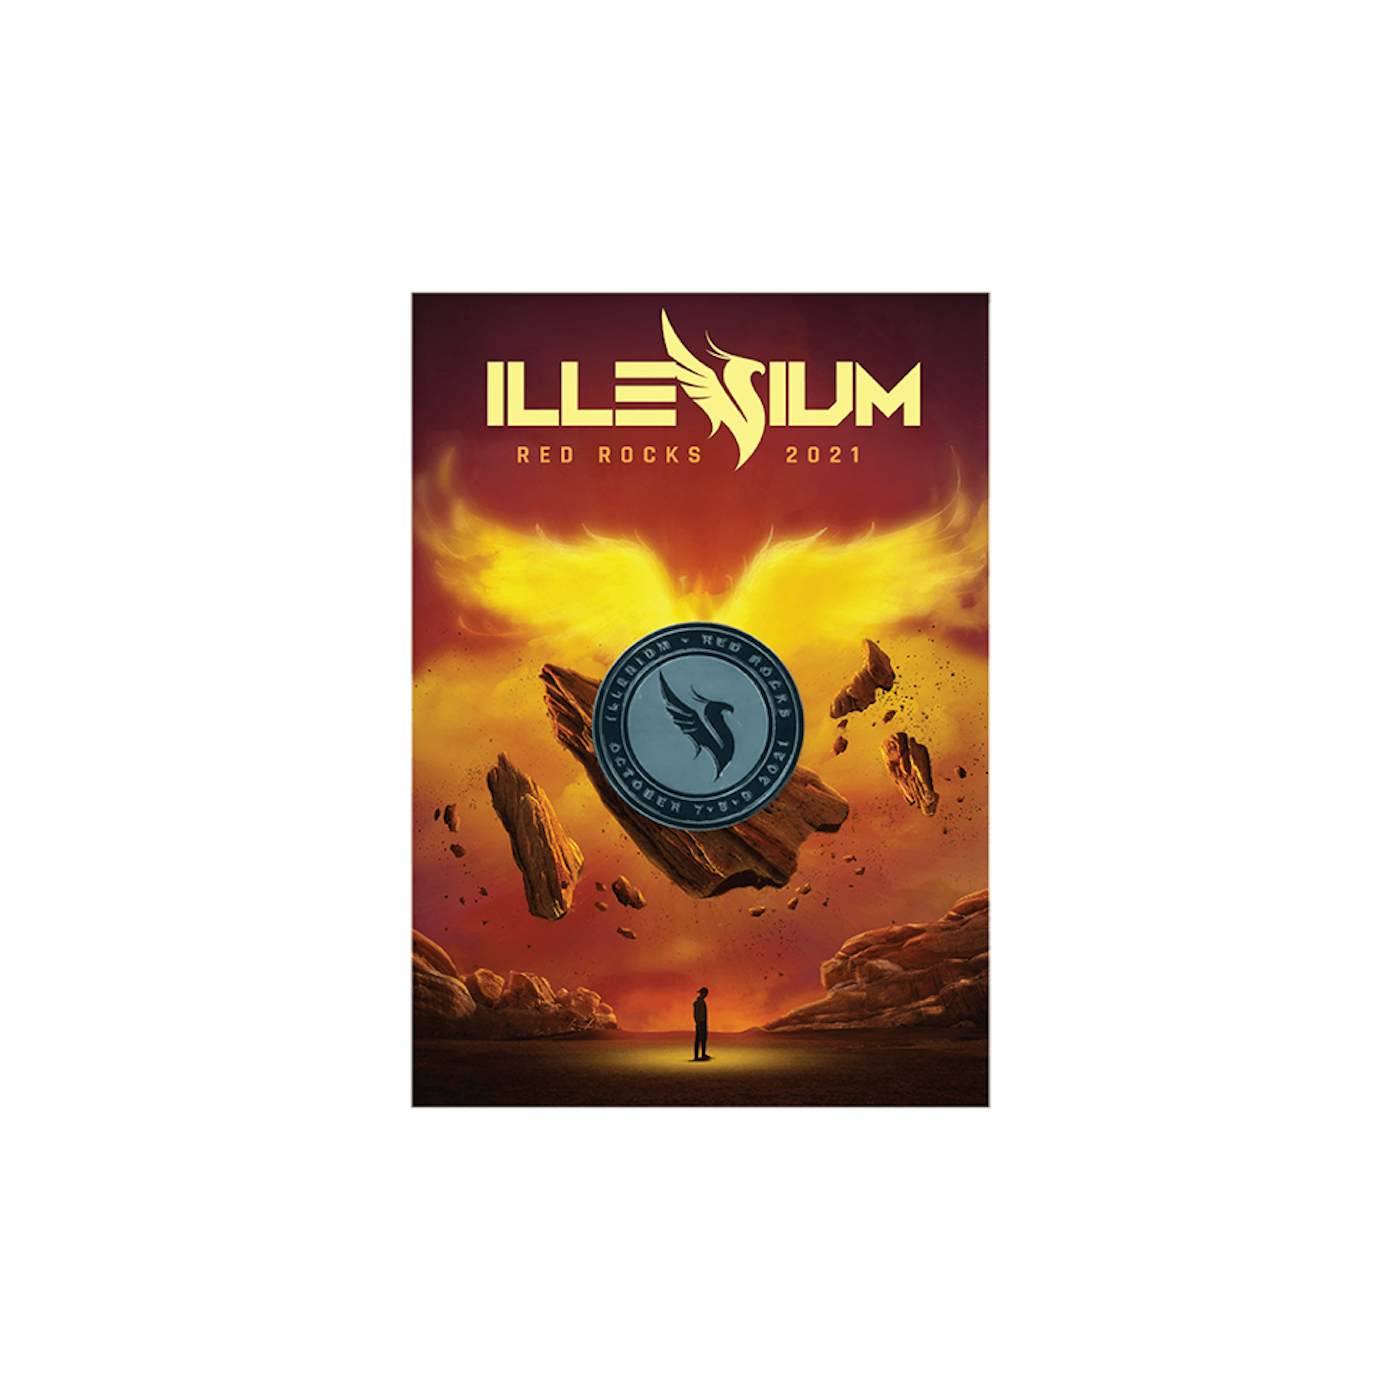 ILLENIUM Red Rocks 2021 Ltd Pin